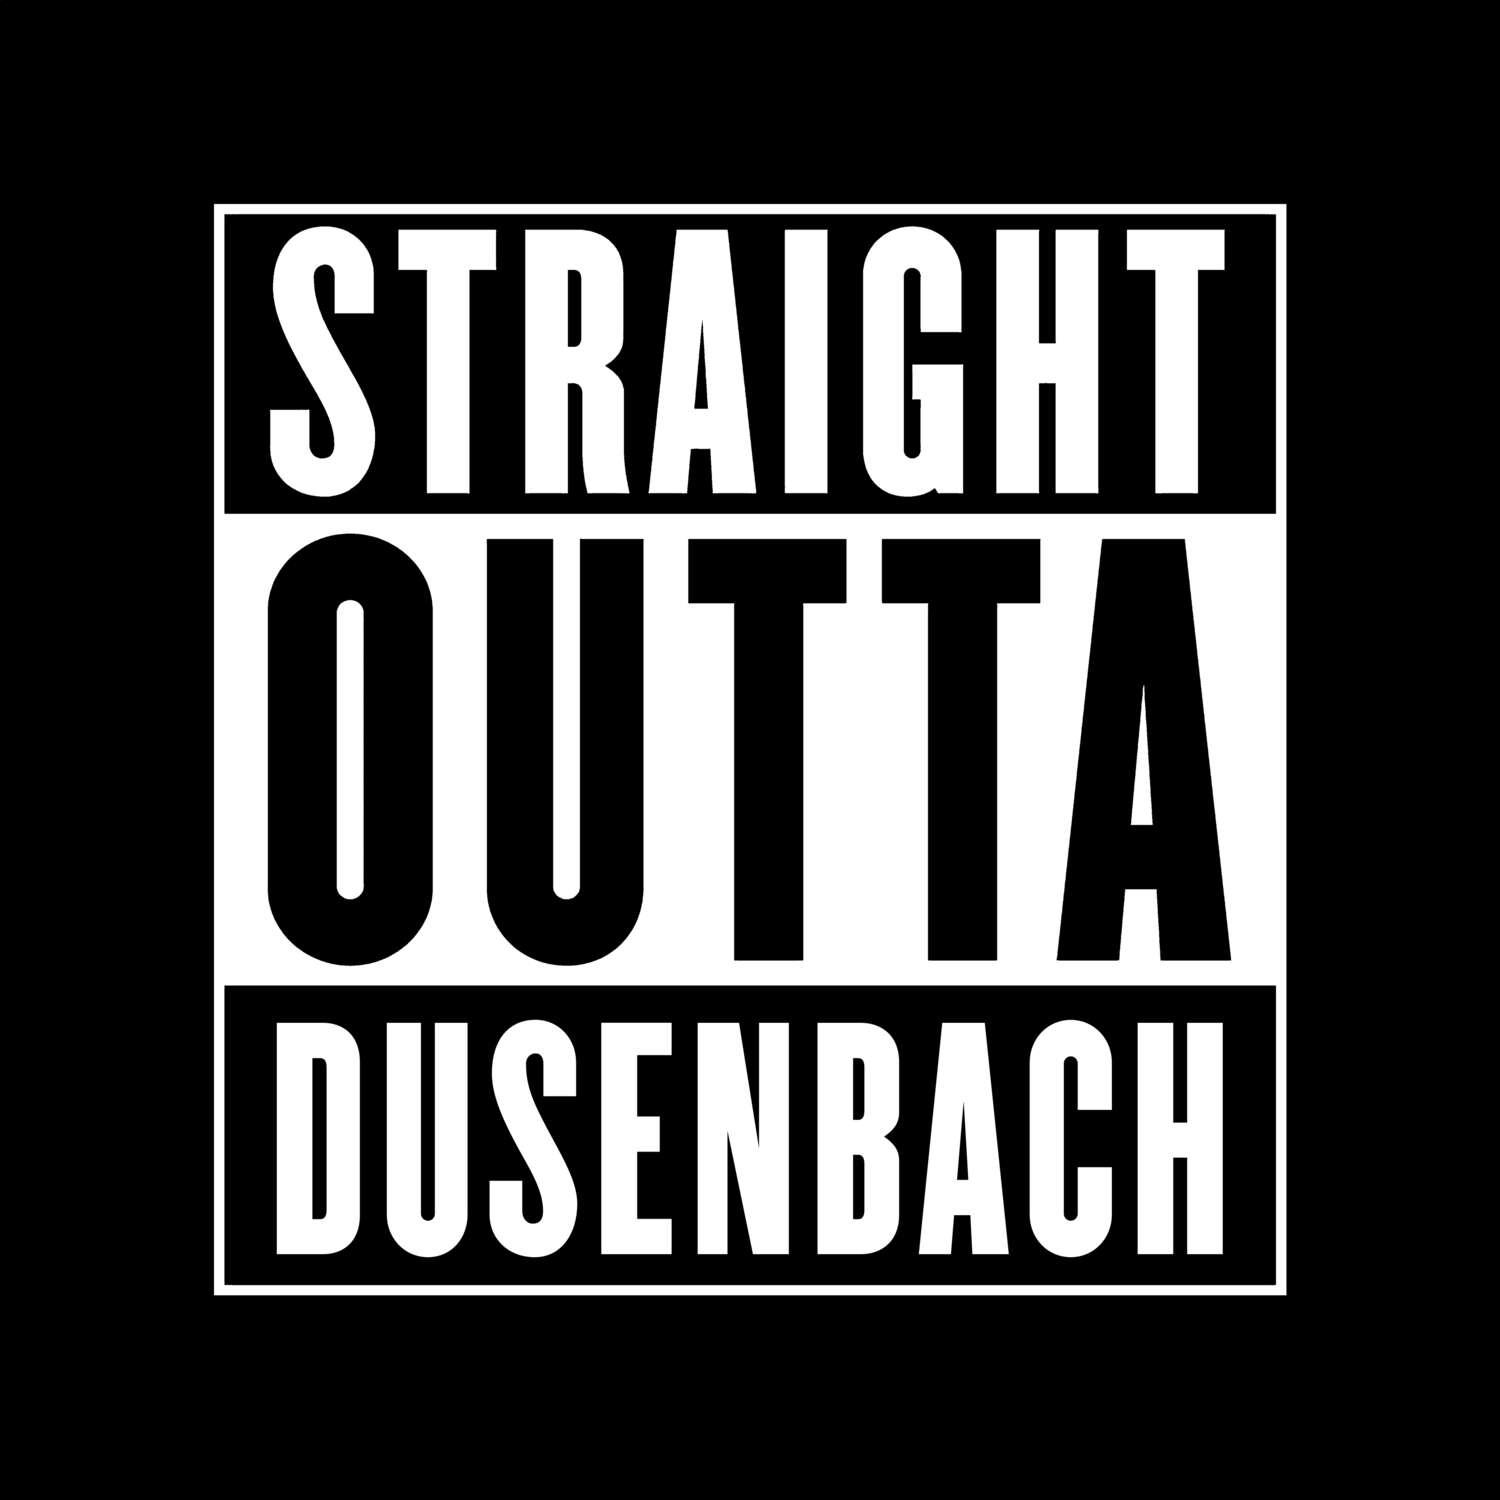 Dusenbach T-Shirt »Straight Outta«